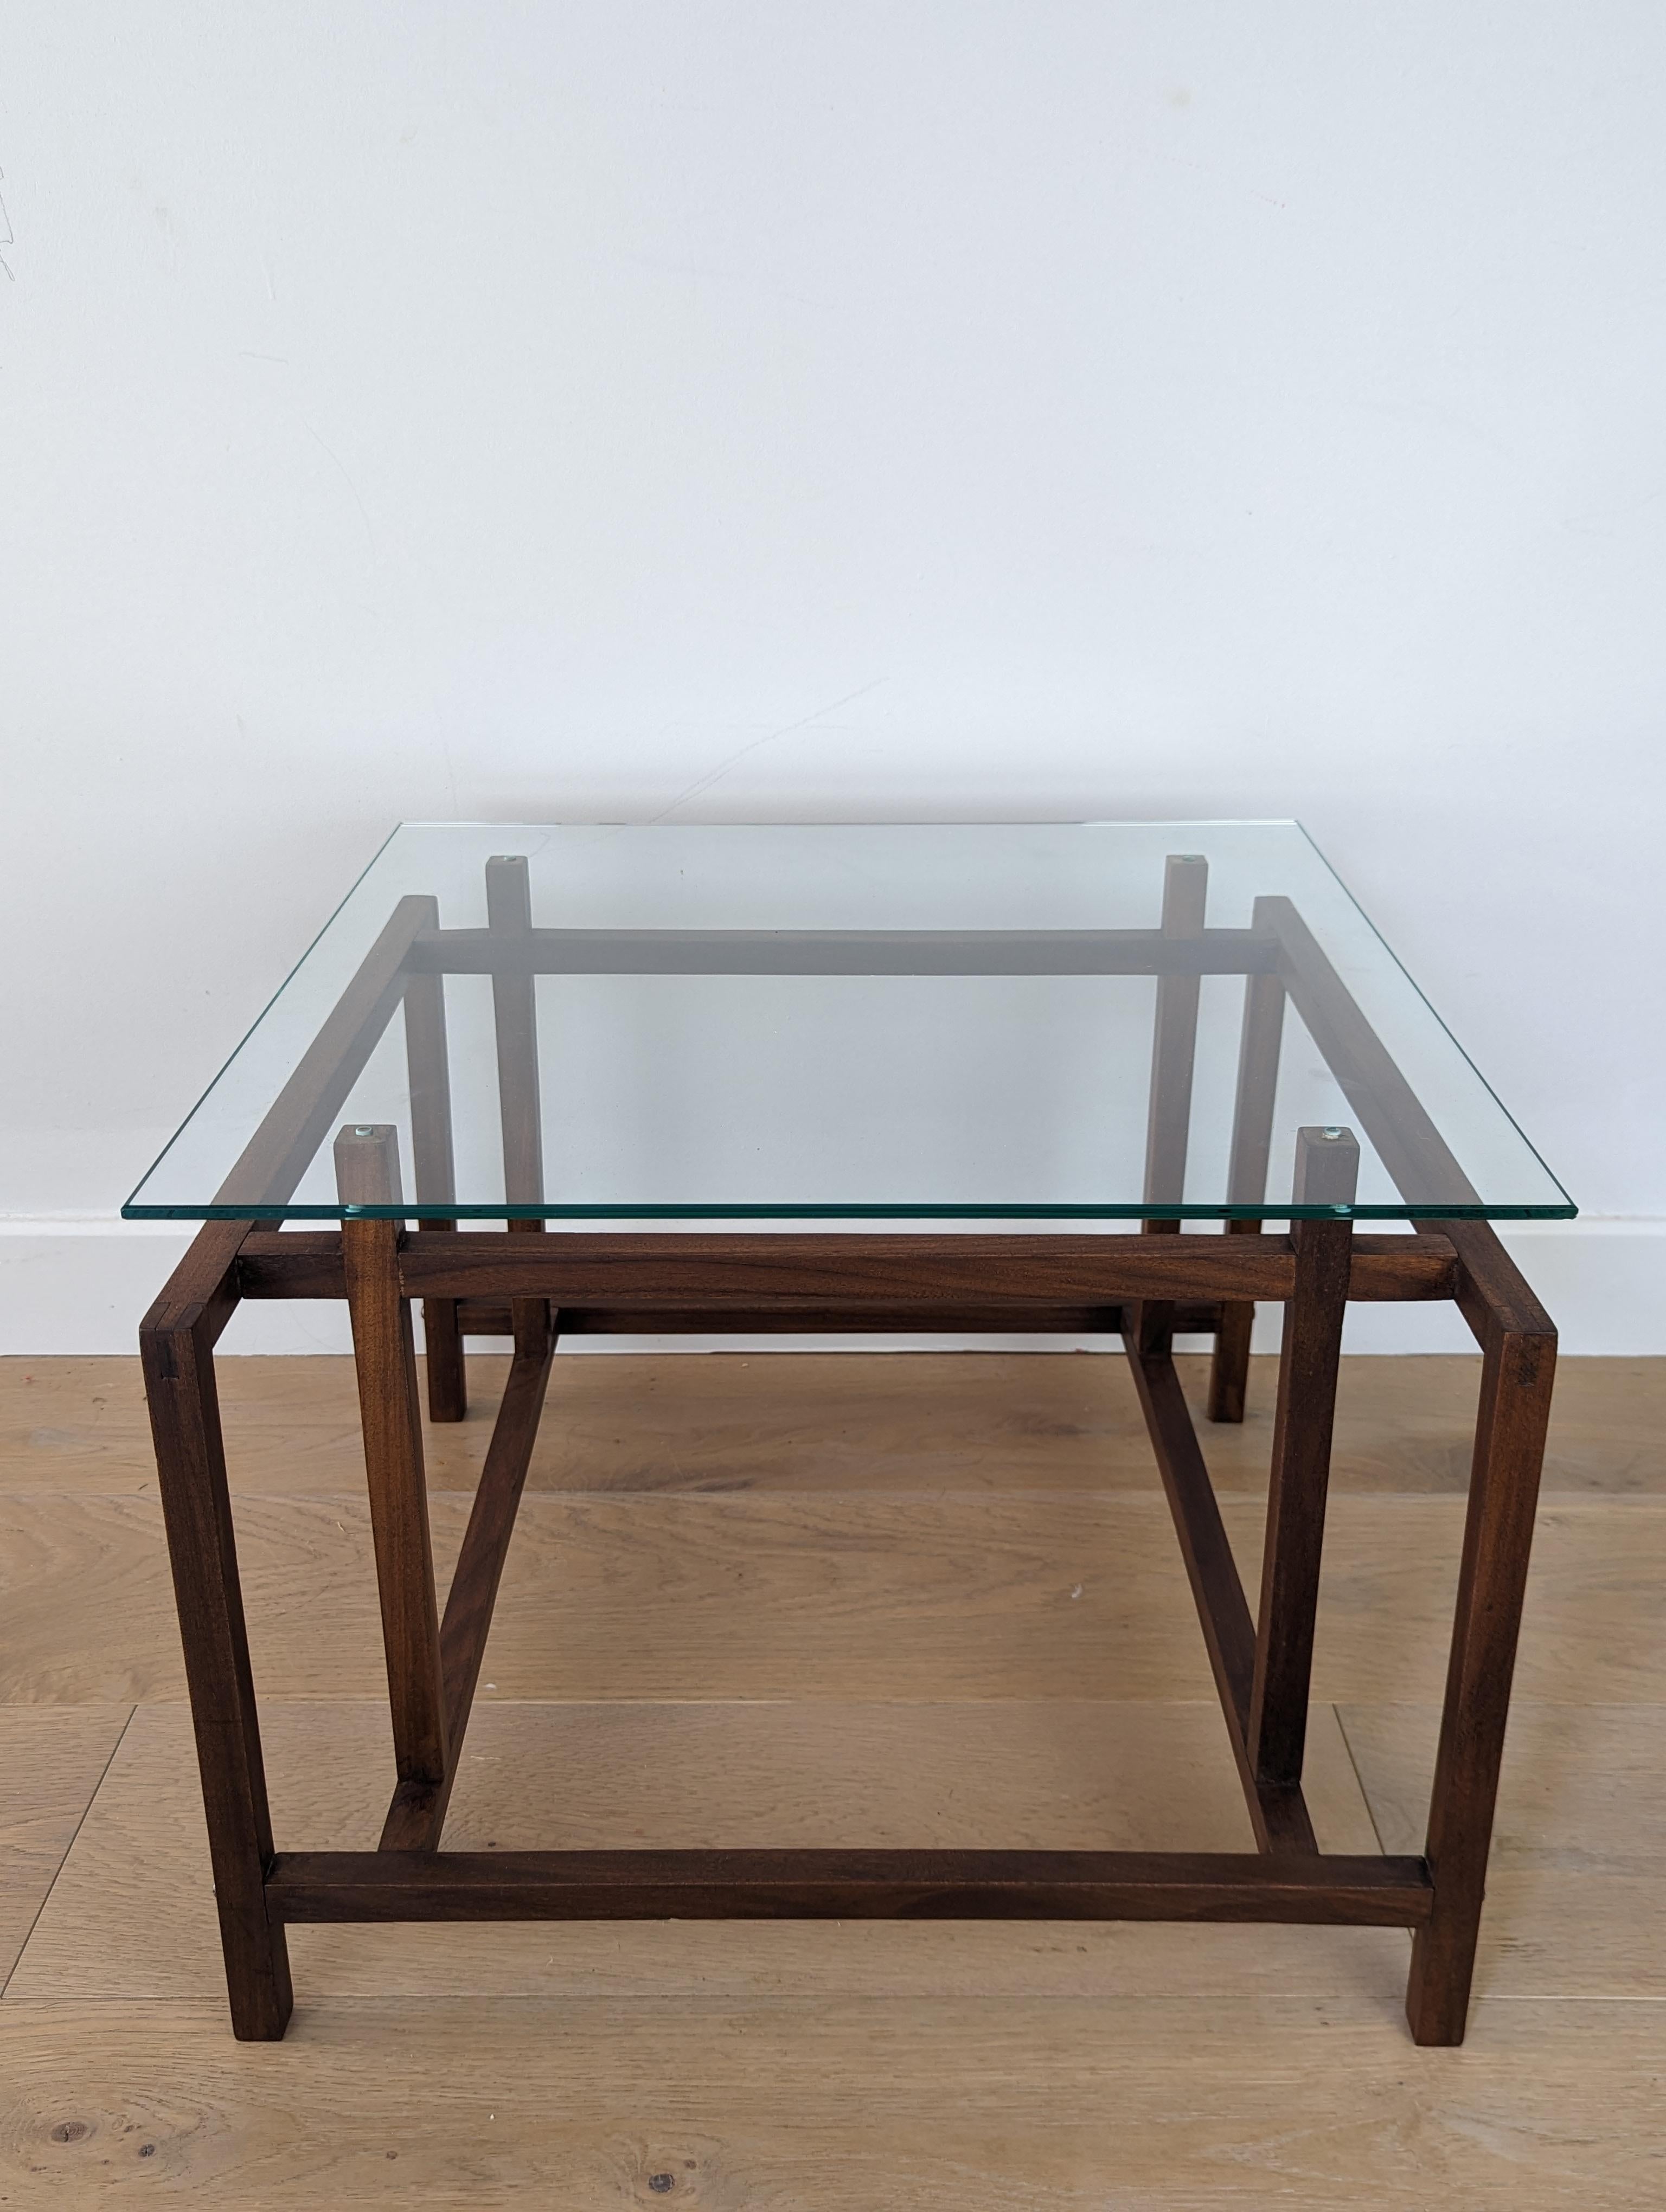 Table d'appoint Henning Norgaard pour Komfort en teck avec plateau en verre.

Cette étonnante petite table d'appoint/café est dotée d'une base géométrique en teck, élégante et stylée. Le plateau de table en verre est délicatement posé sur le cadre